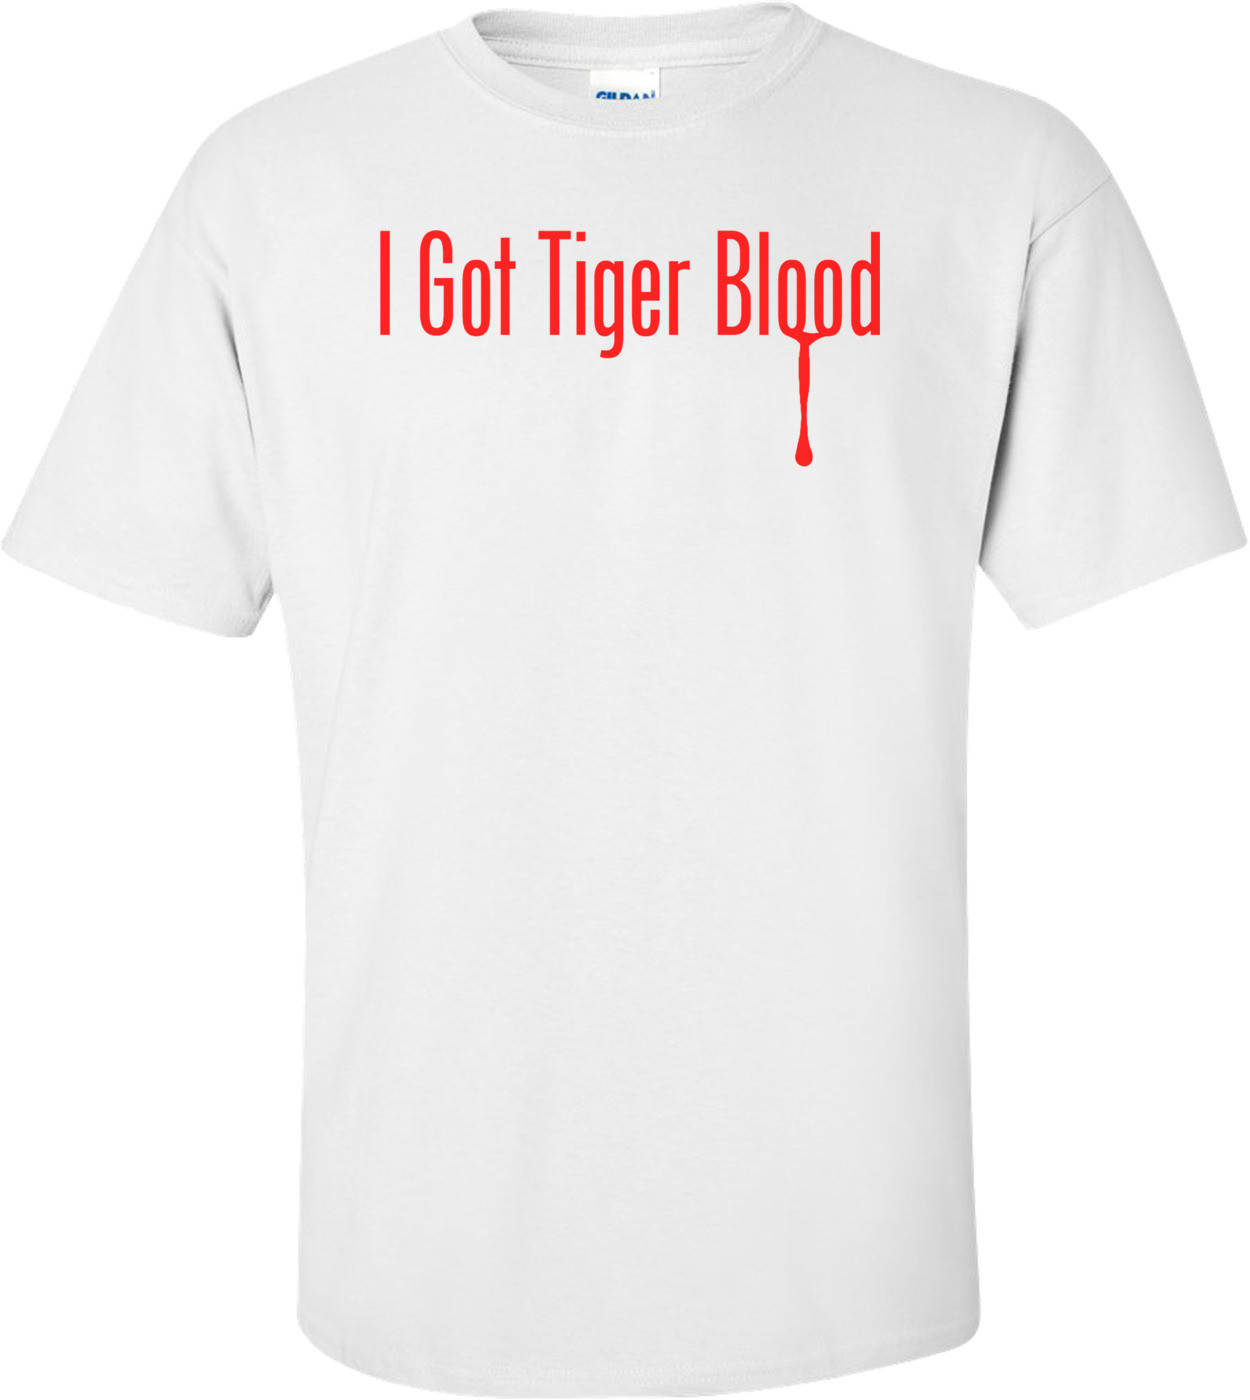 I Got Tiger Blood - Charlie Sheen